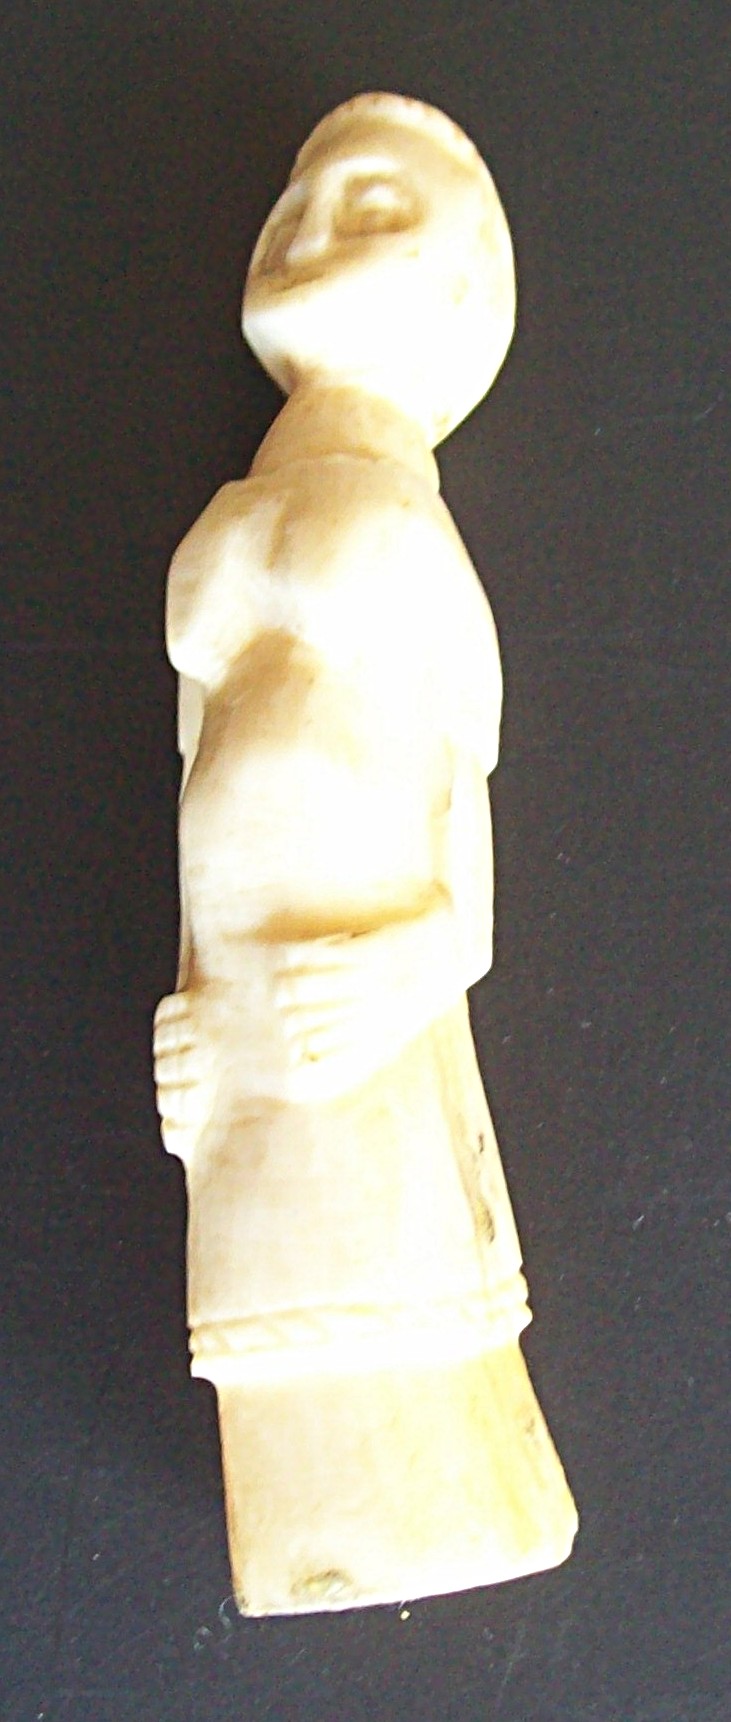 2013.04.02 - Statuette ivoire Hélène (2).JPG